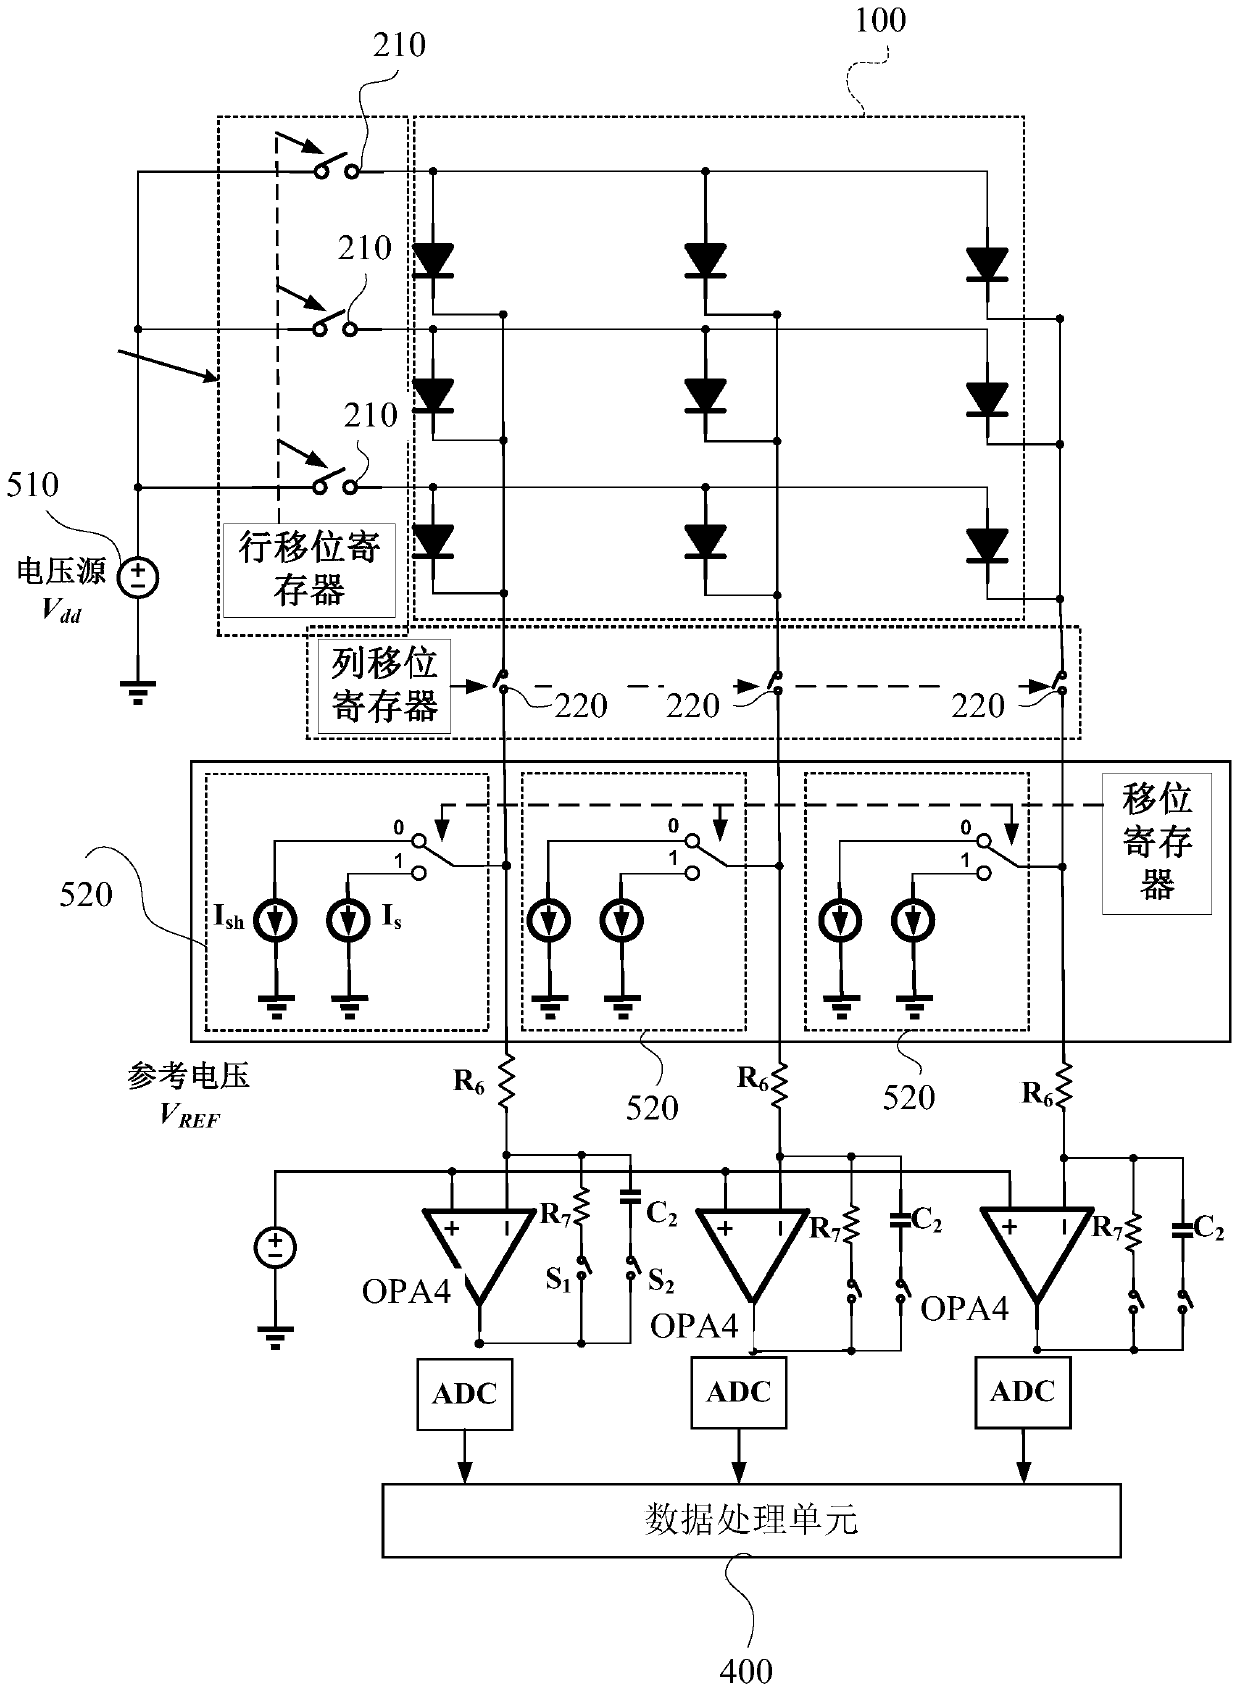 MEMS sensor thermal parameter testing circuit and testing method